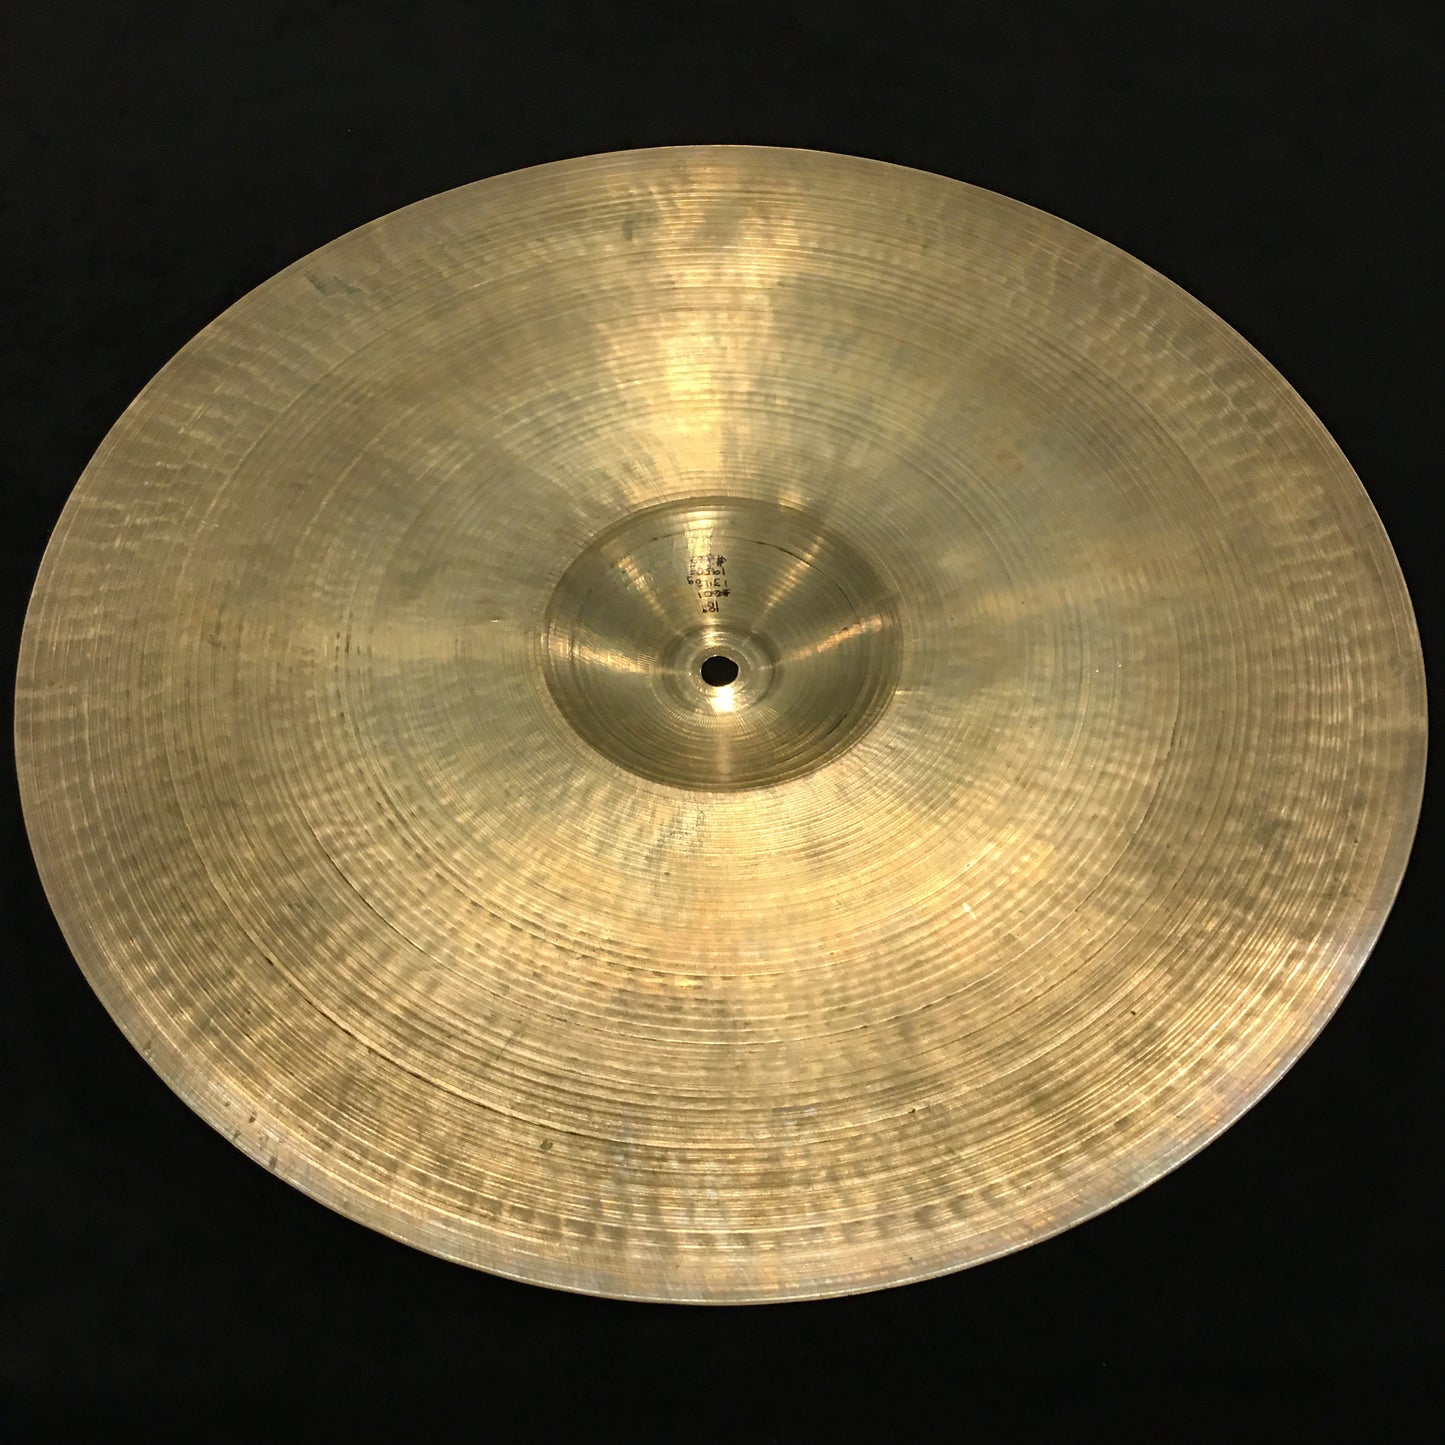 18" Zildjian 1950's Crash Ride Cymbal Great Weight 1341 grams  #601